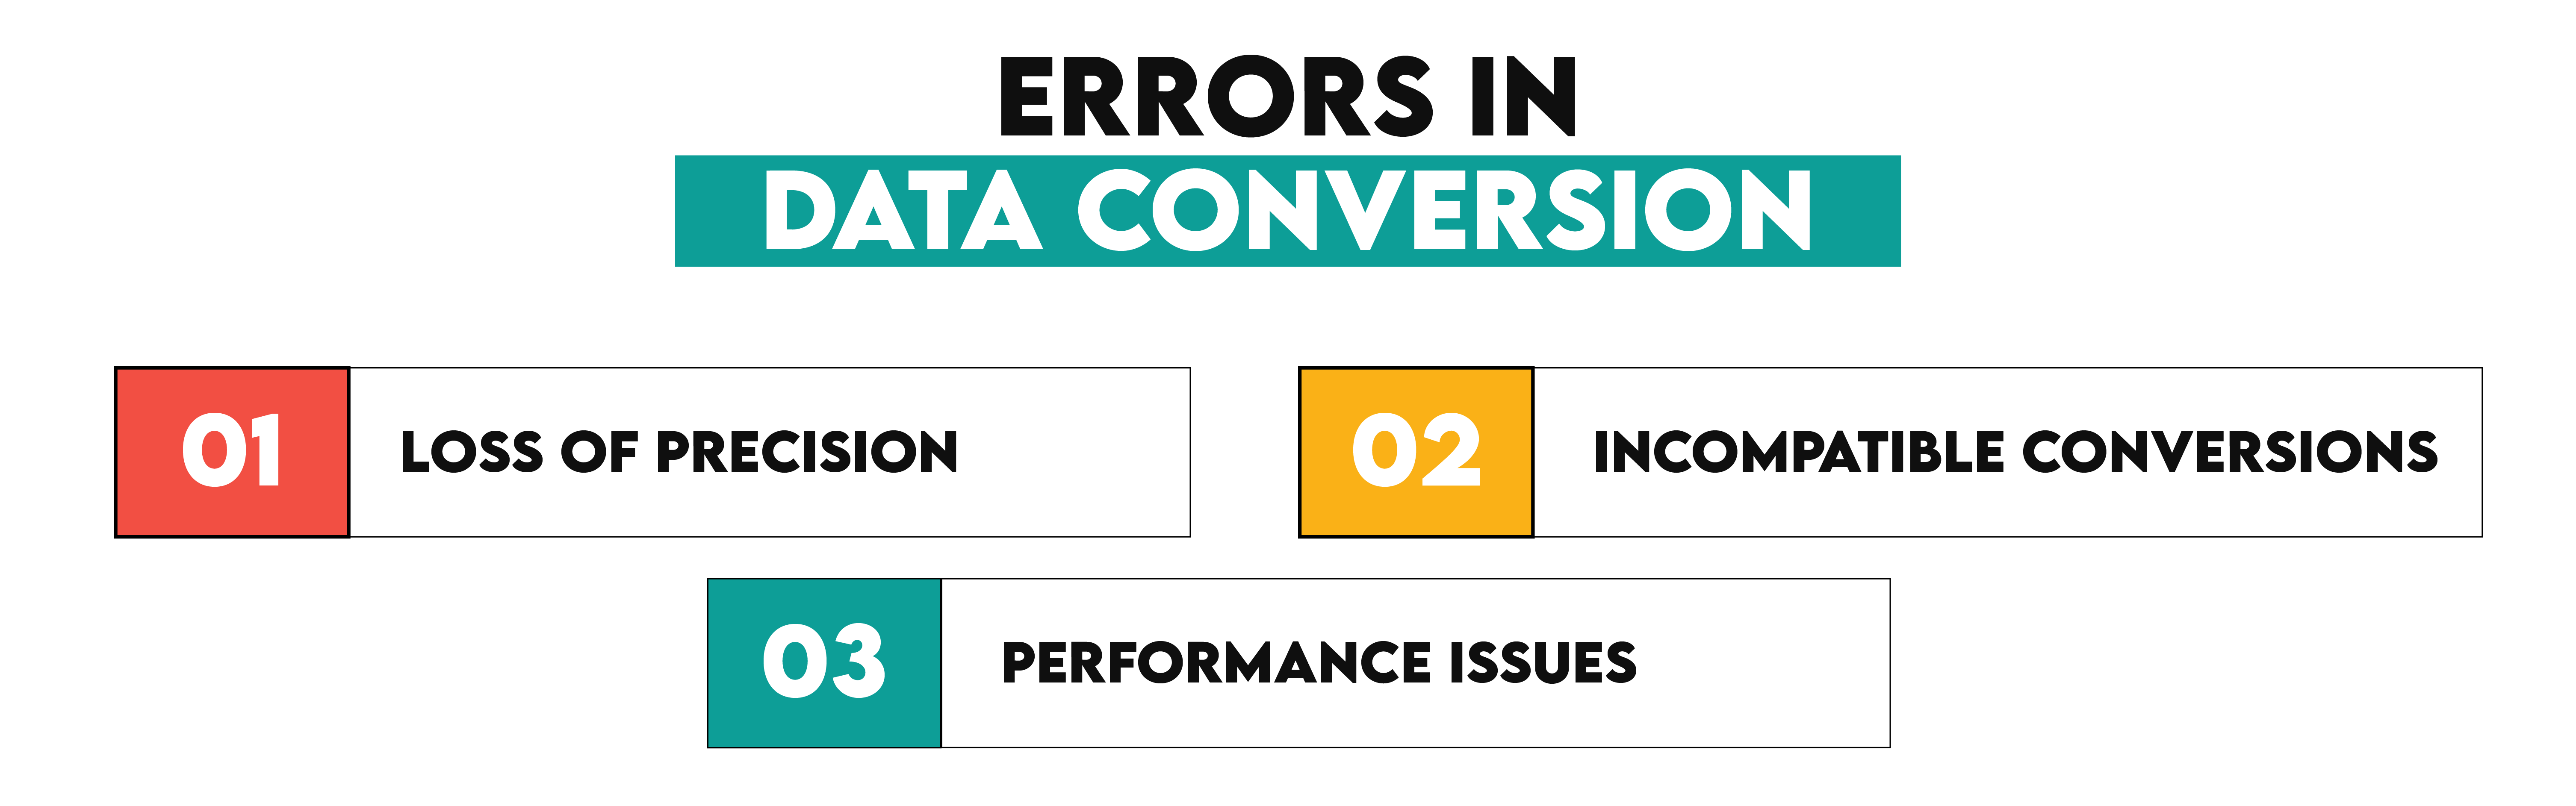 Errors in Data Conversion